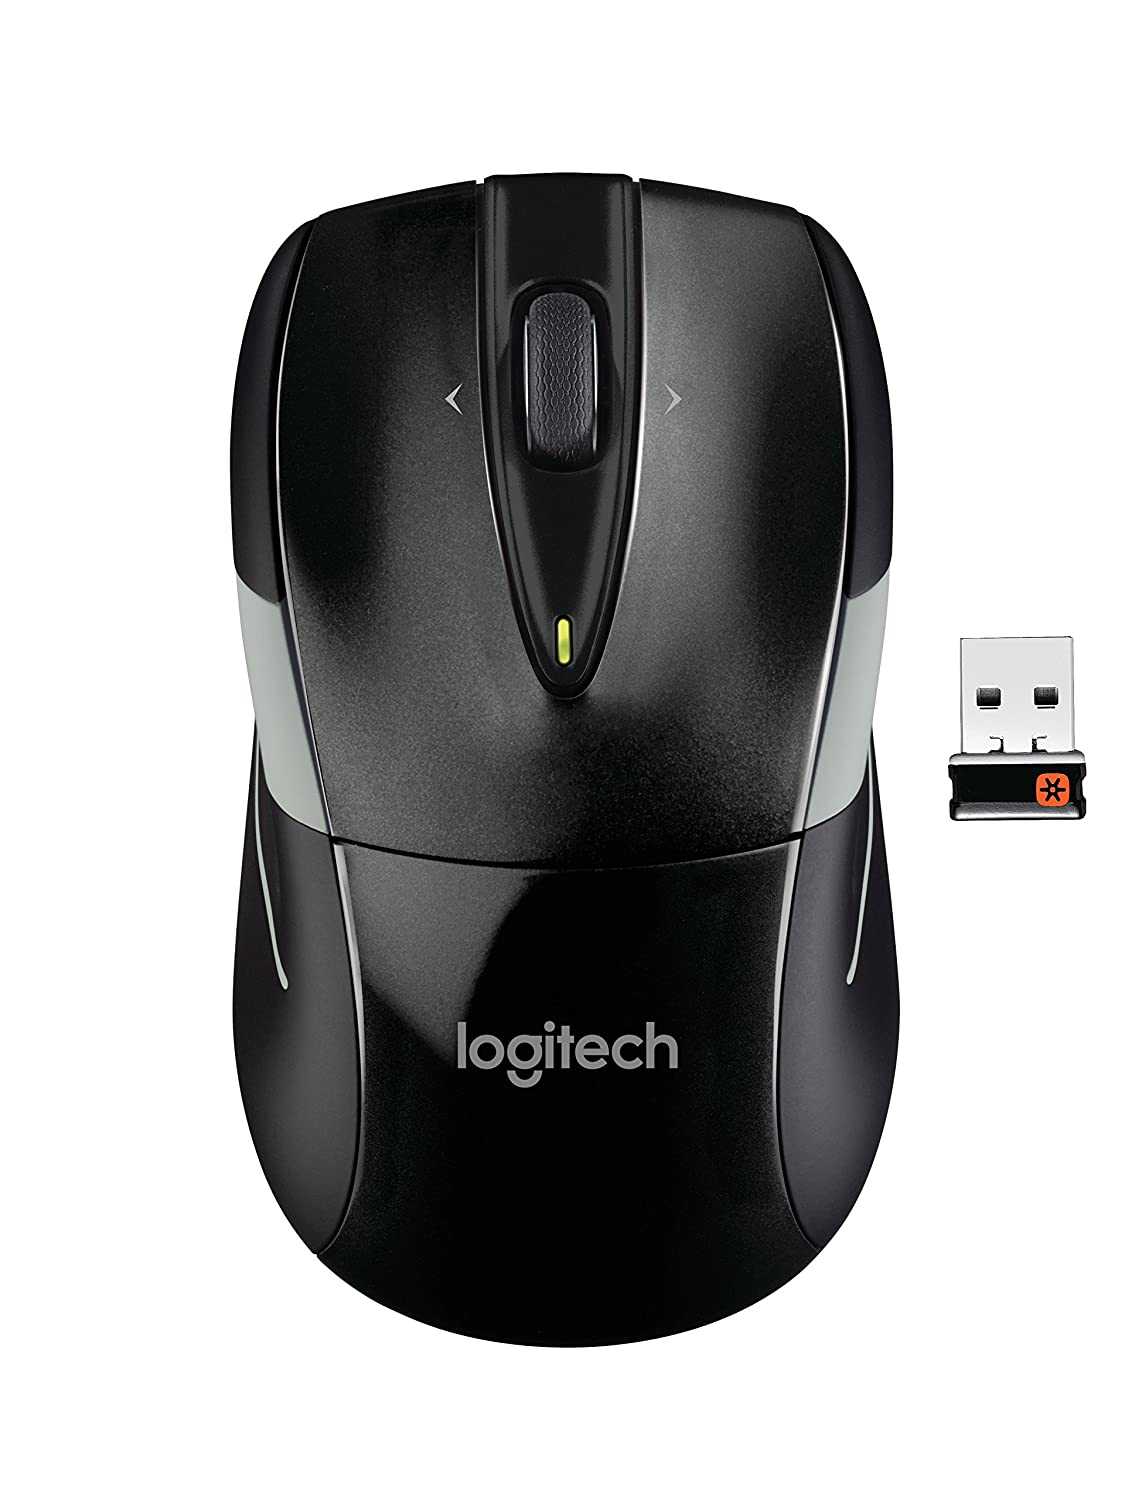 Logitech wireless mouse m525 blue-black usb купить по акционной цене , отзывы и обзоры.